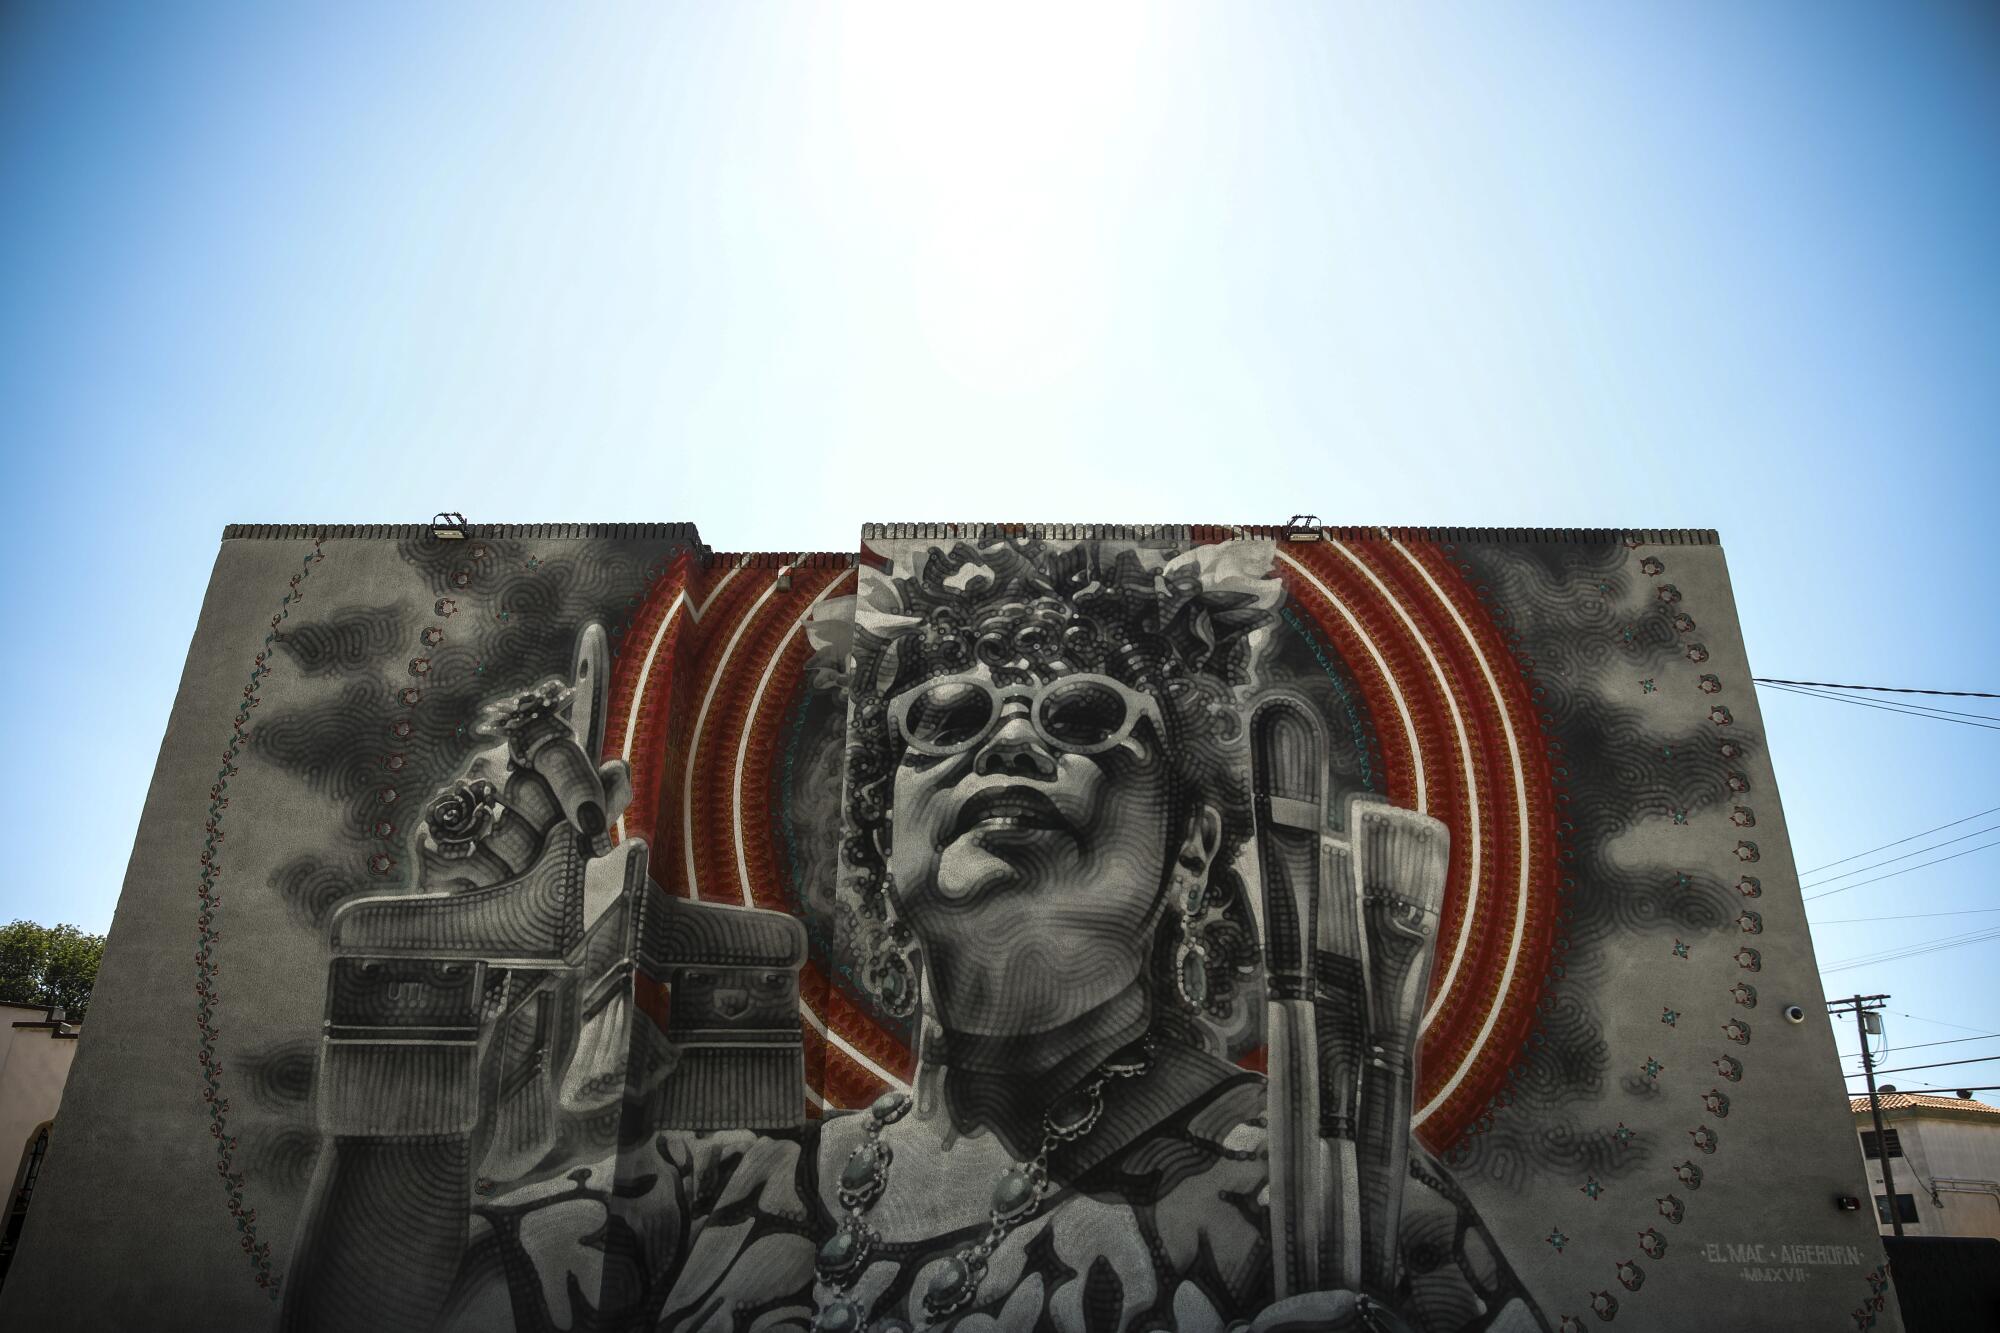 A mural by artist El Mac adorns a wall 